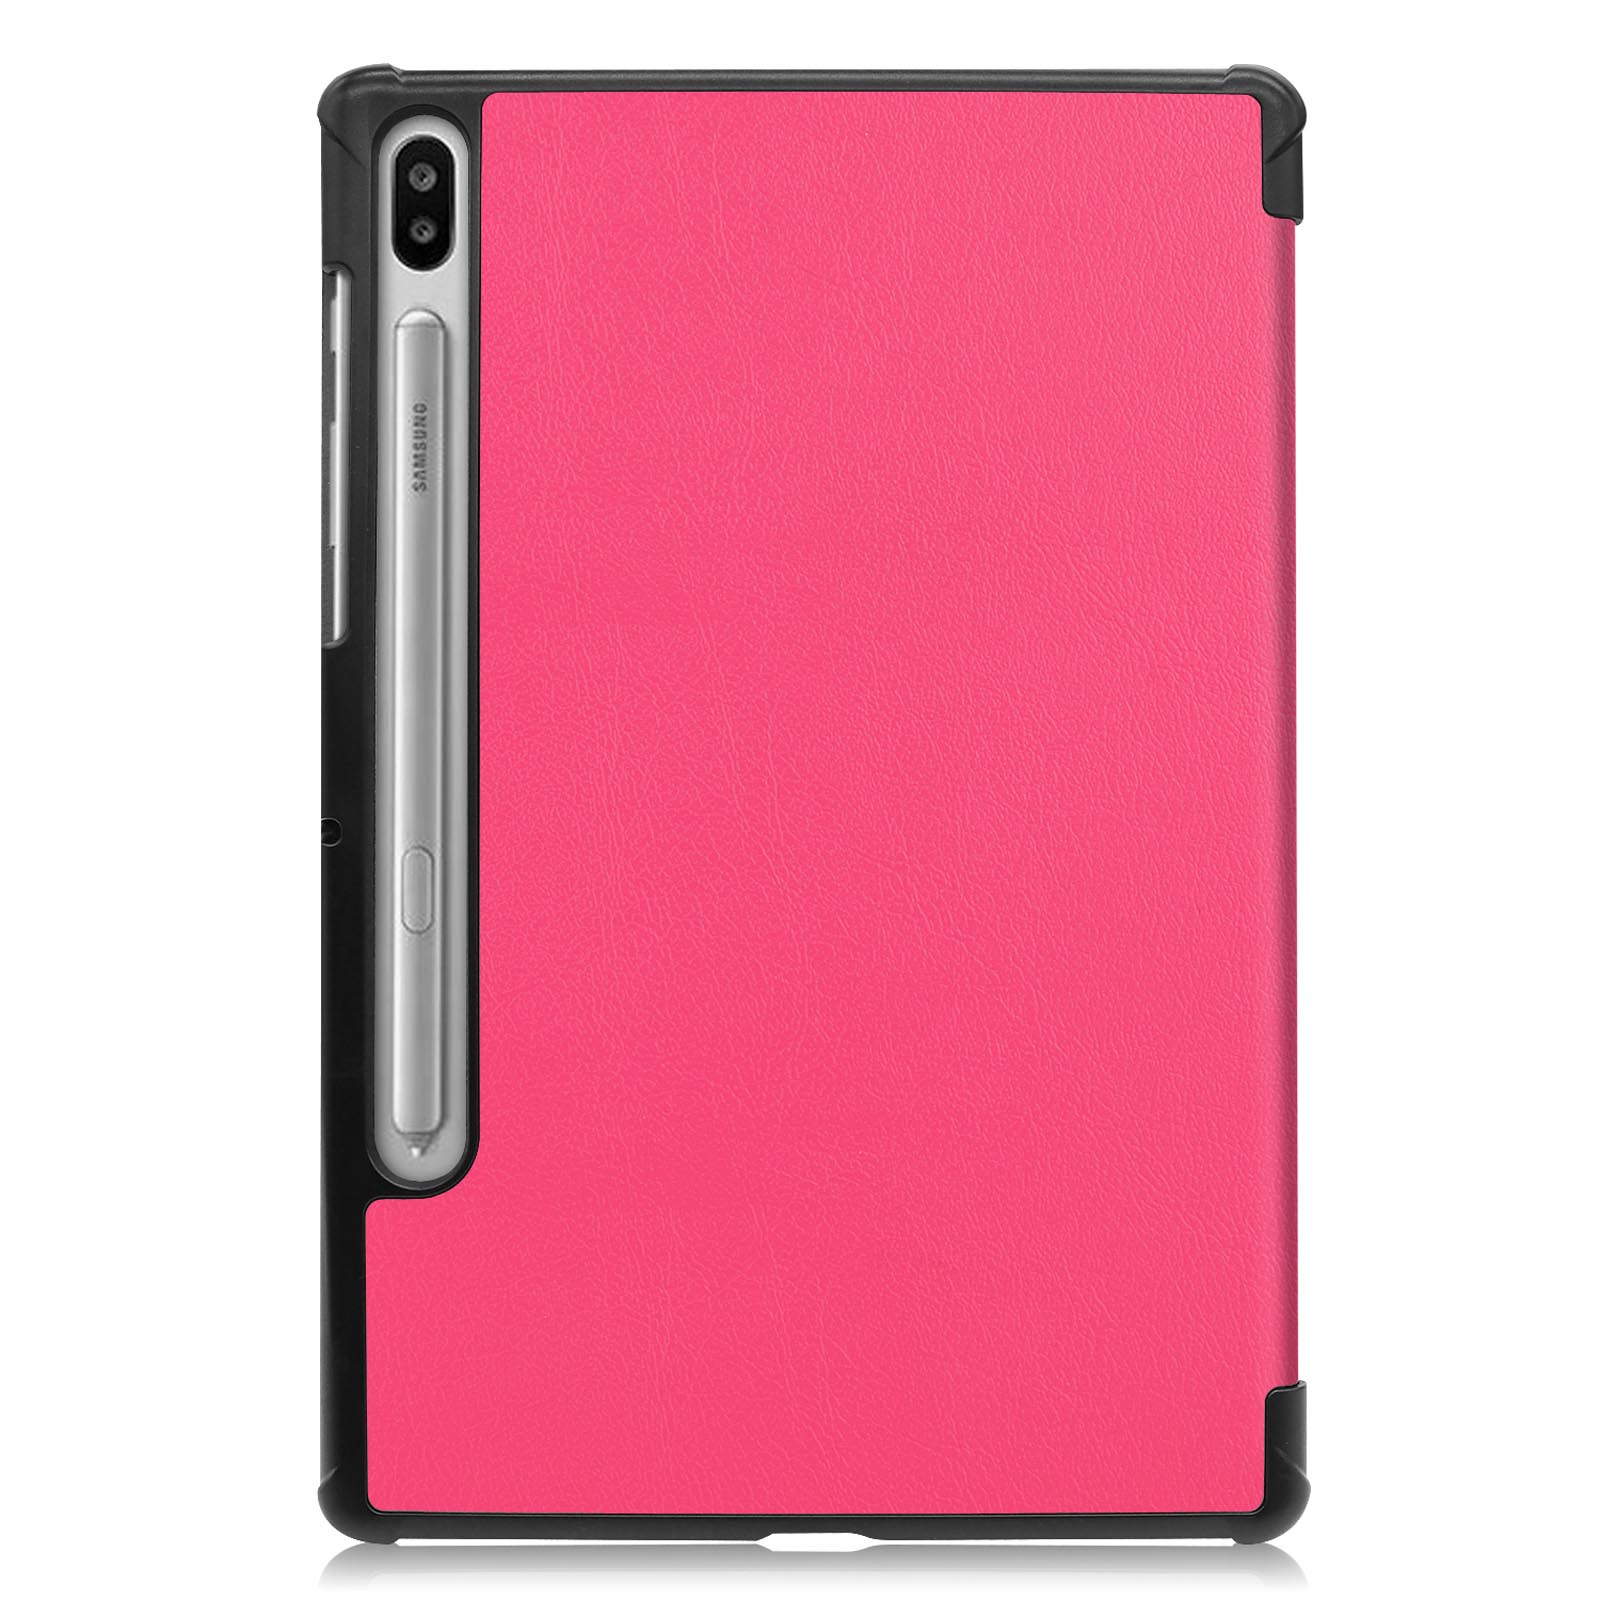 Galaxy LOBWERK SM-T865 Tab + für 2in1 10.5 (Schutzhülle Set SM-T860 Case Pink S6 Bookcover Kunstleder, Samsung Schutzglas)